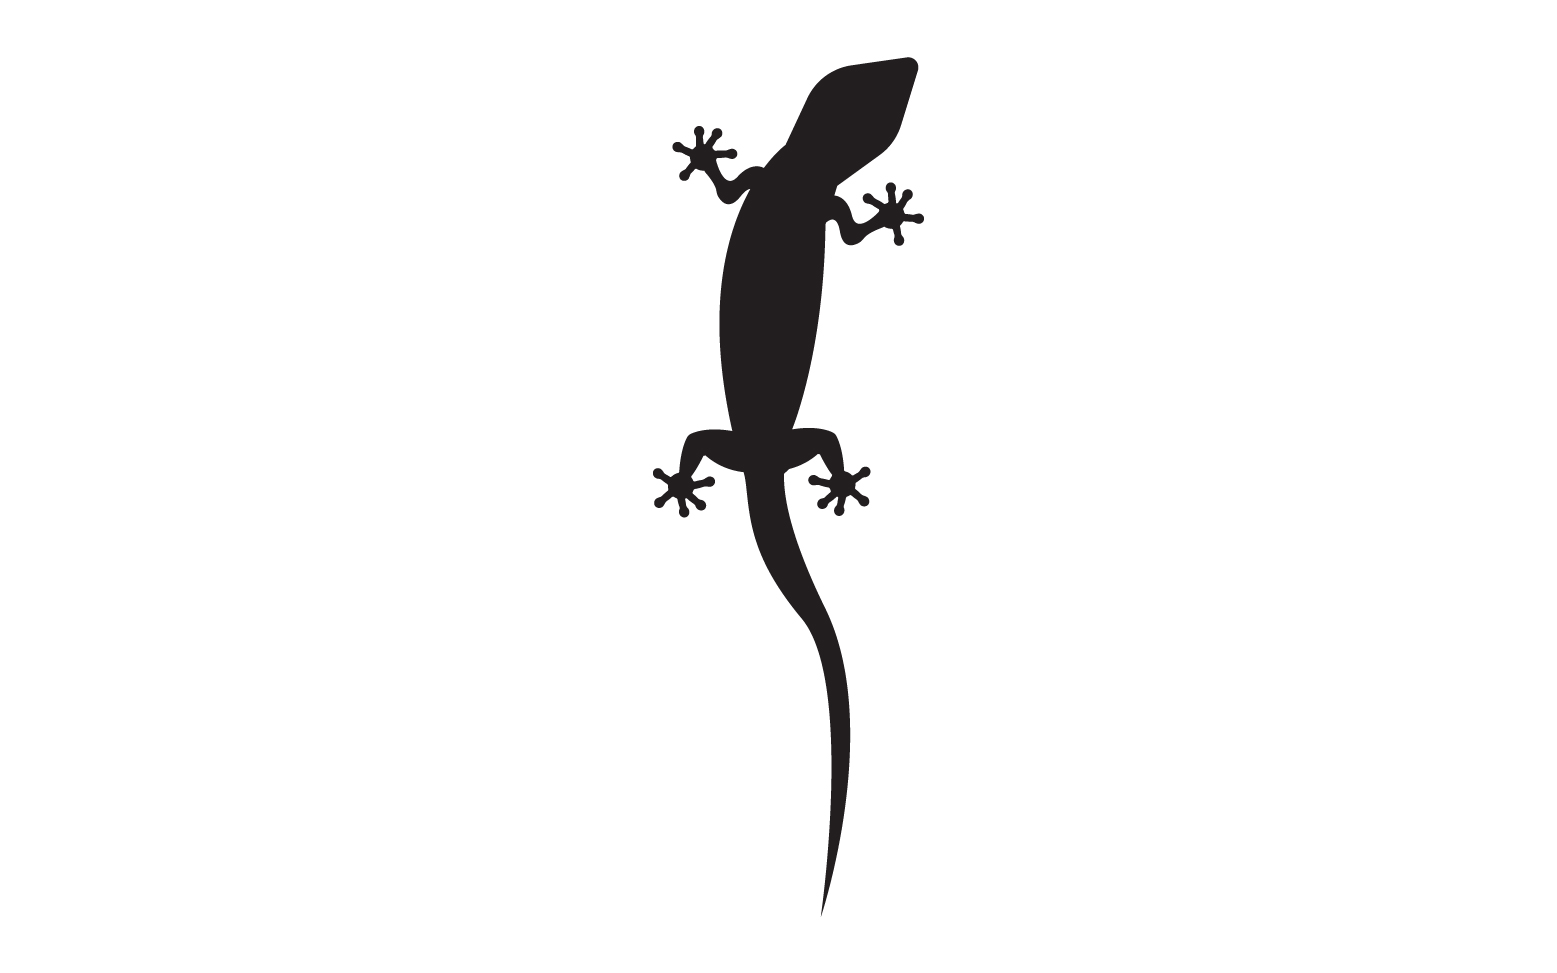 Lizard chameleon home lizard logo v37